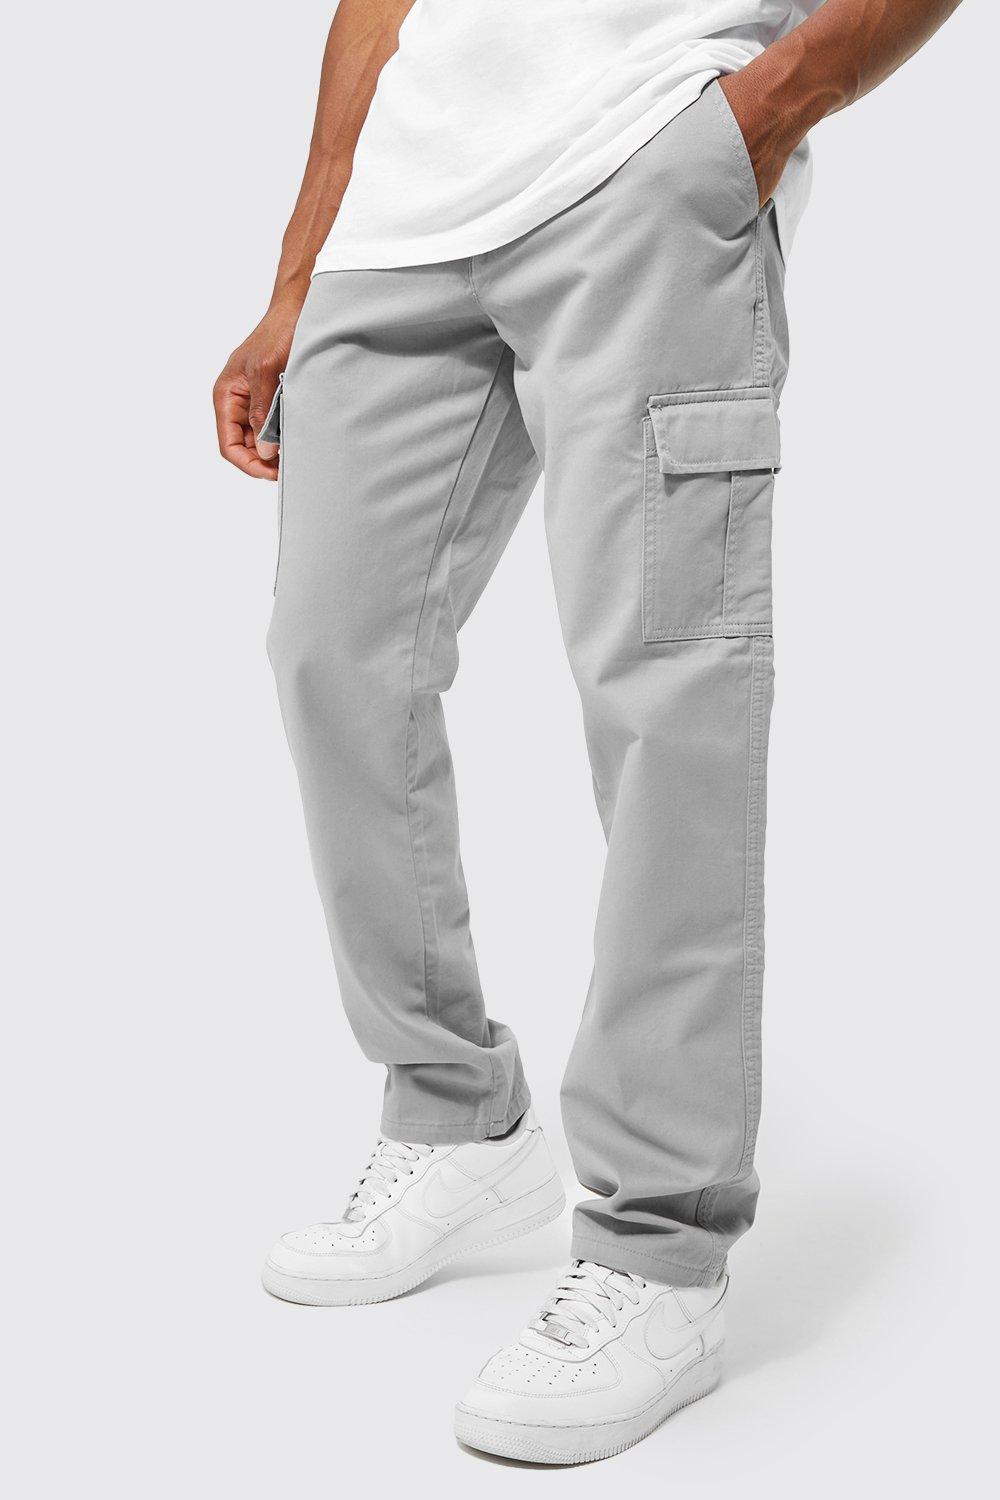 pantalon cargo droit homme - gris - 36, gris